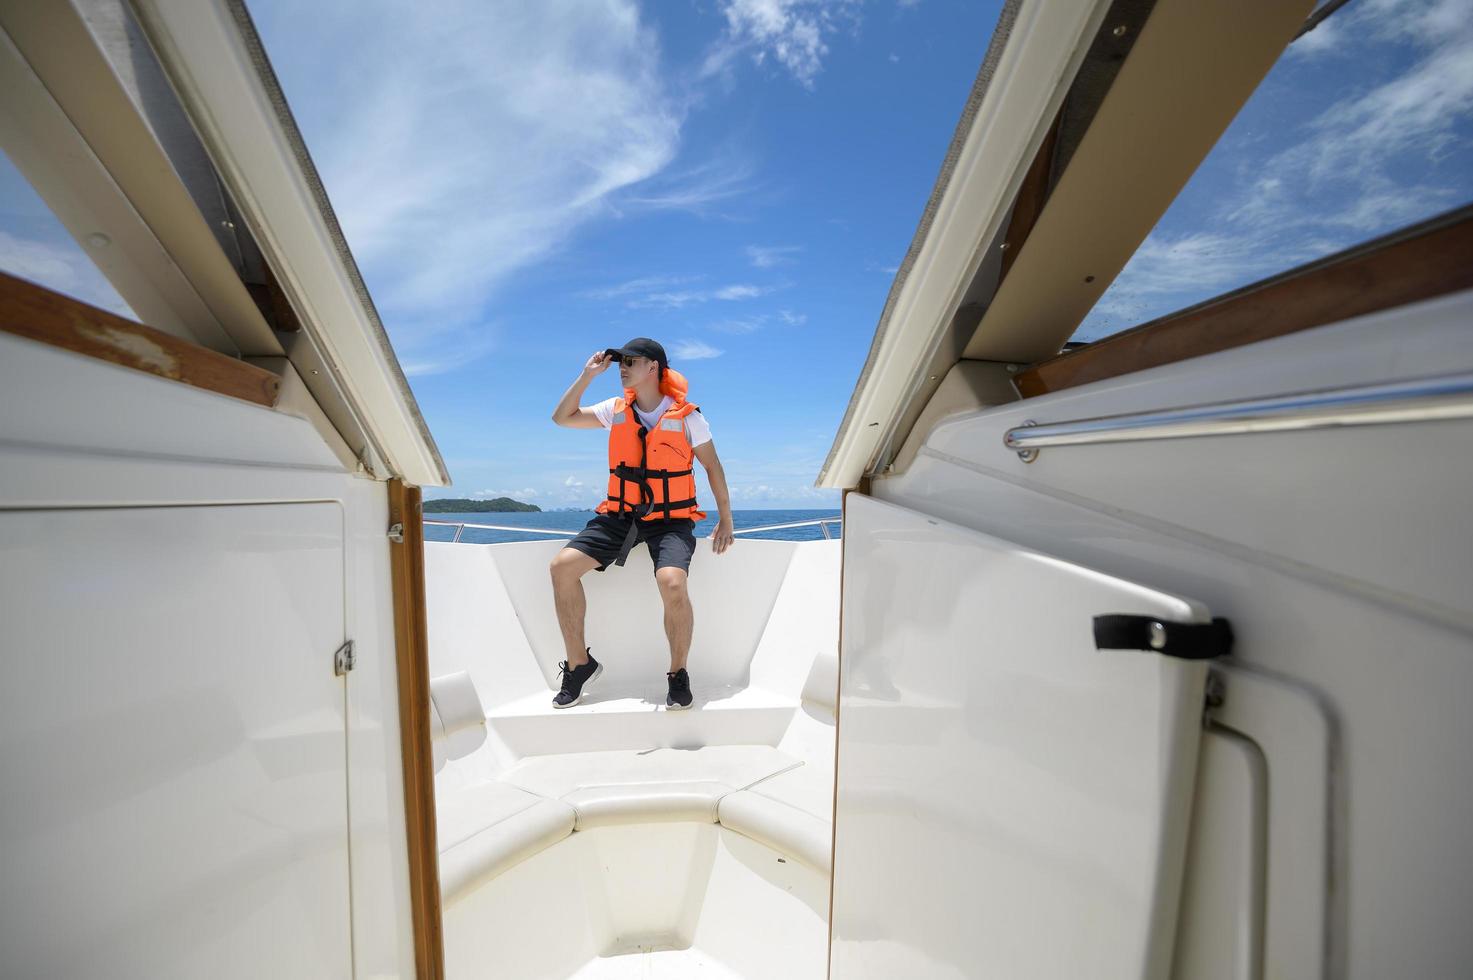 turist i flytväst njuter och kopplar av på motorbåt med en vacker utsikt över havet och bergen i bakgrunden foto